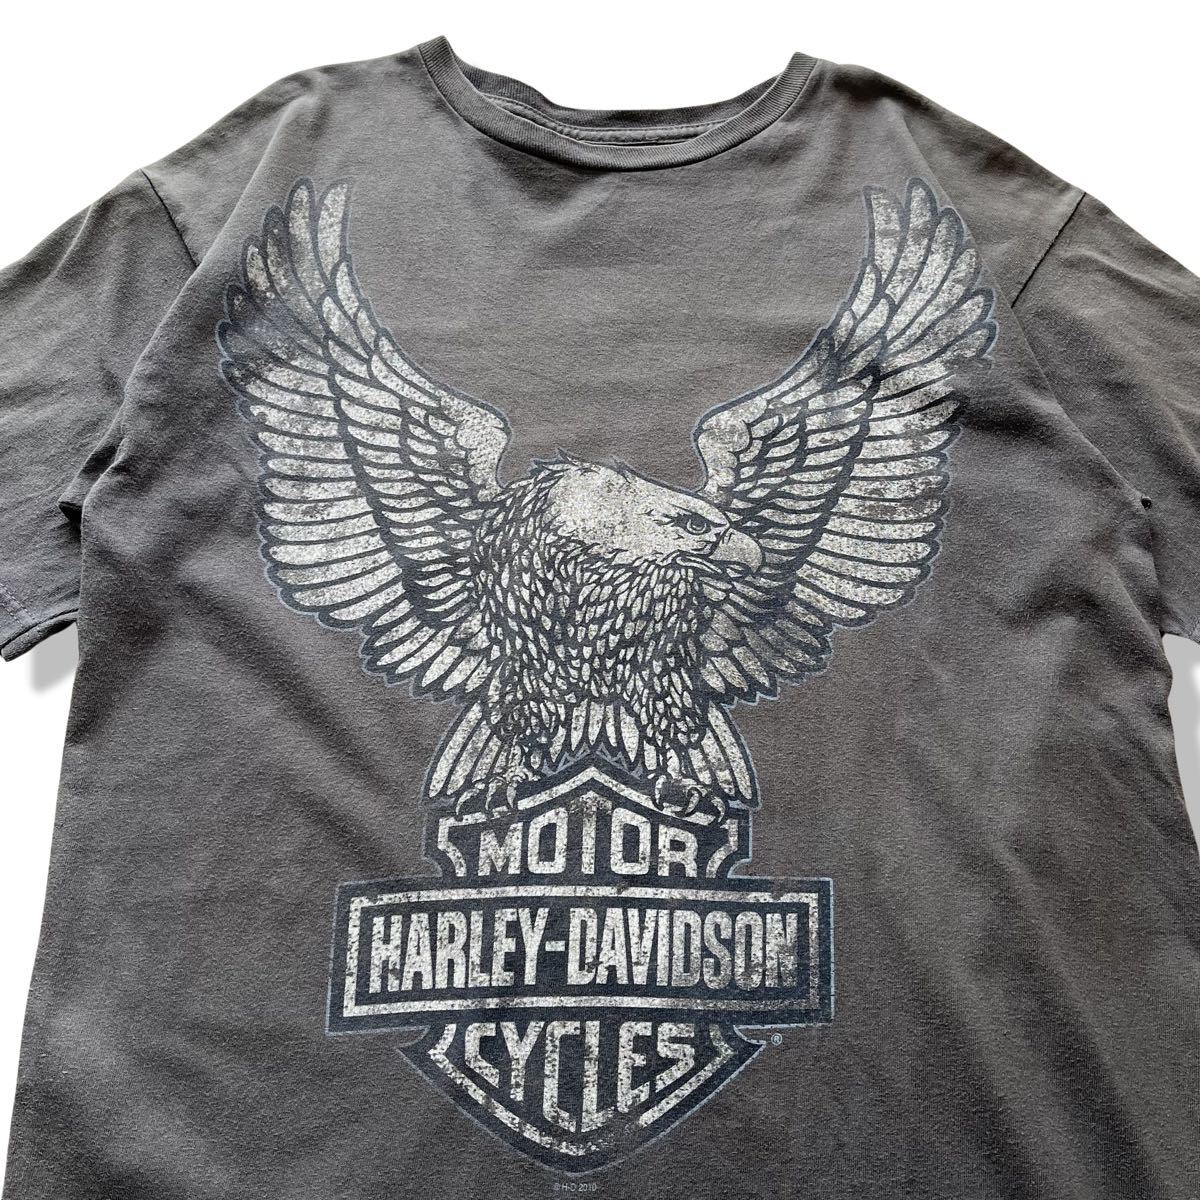 00s】ハーレーダビッドソン ビッグイーグルロゴ 半袖Tシャツ グレー M